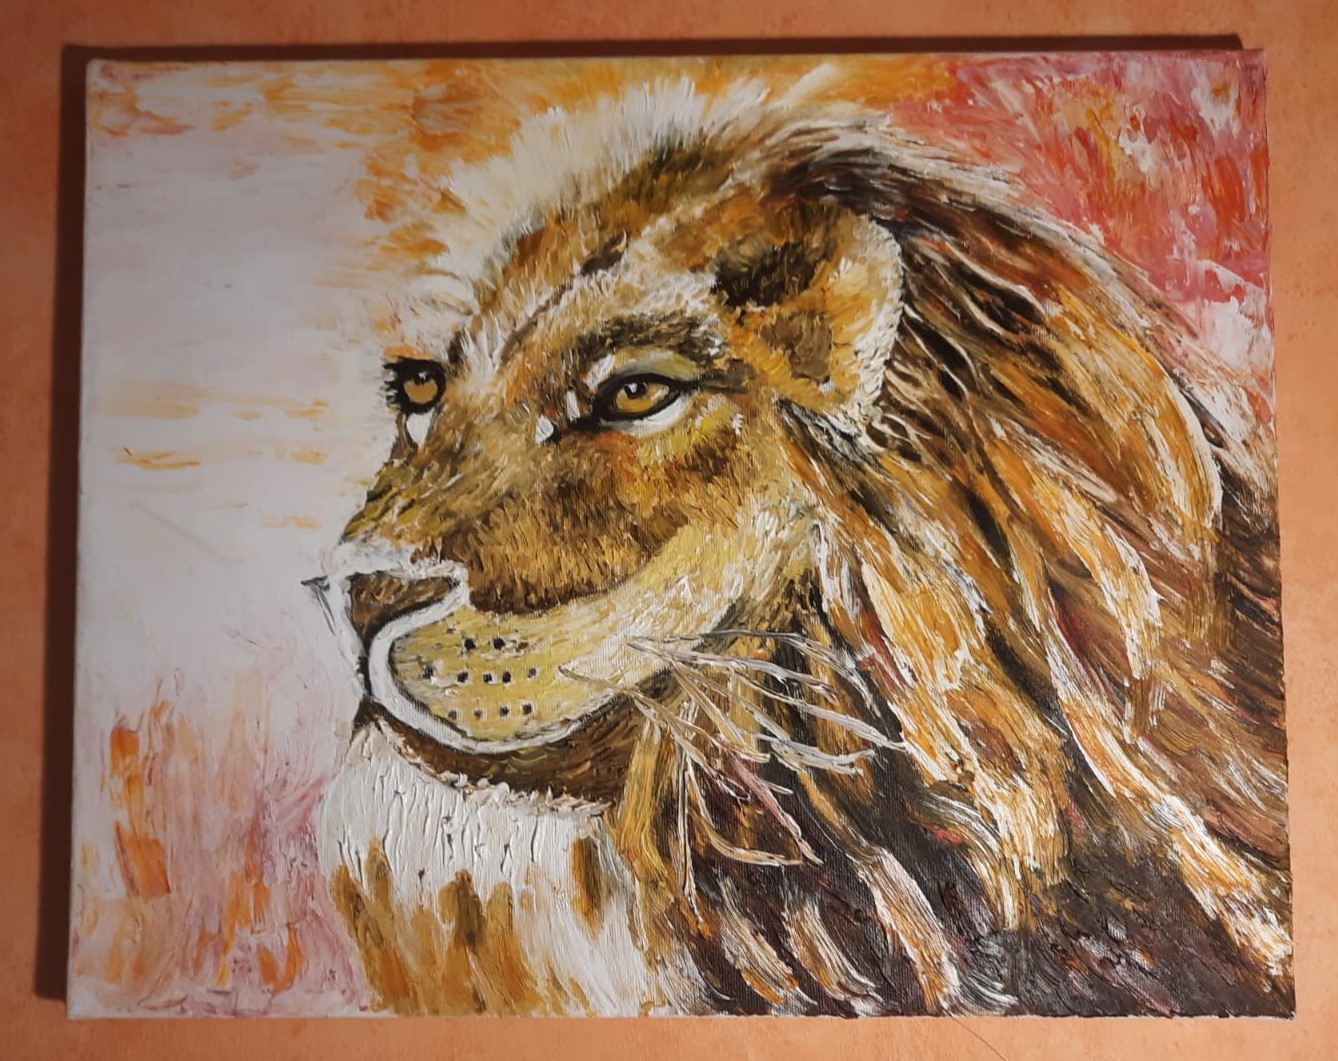 Löwe in der Serengeti
80 x 60 cm